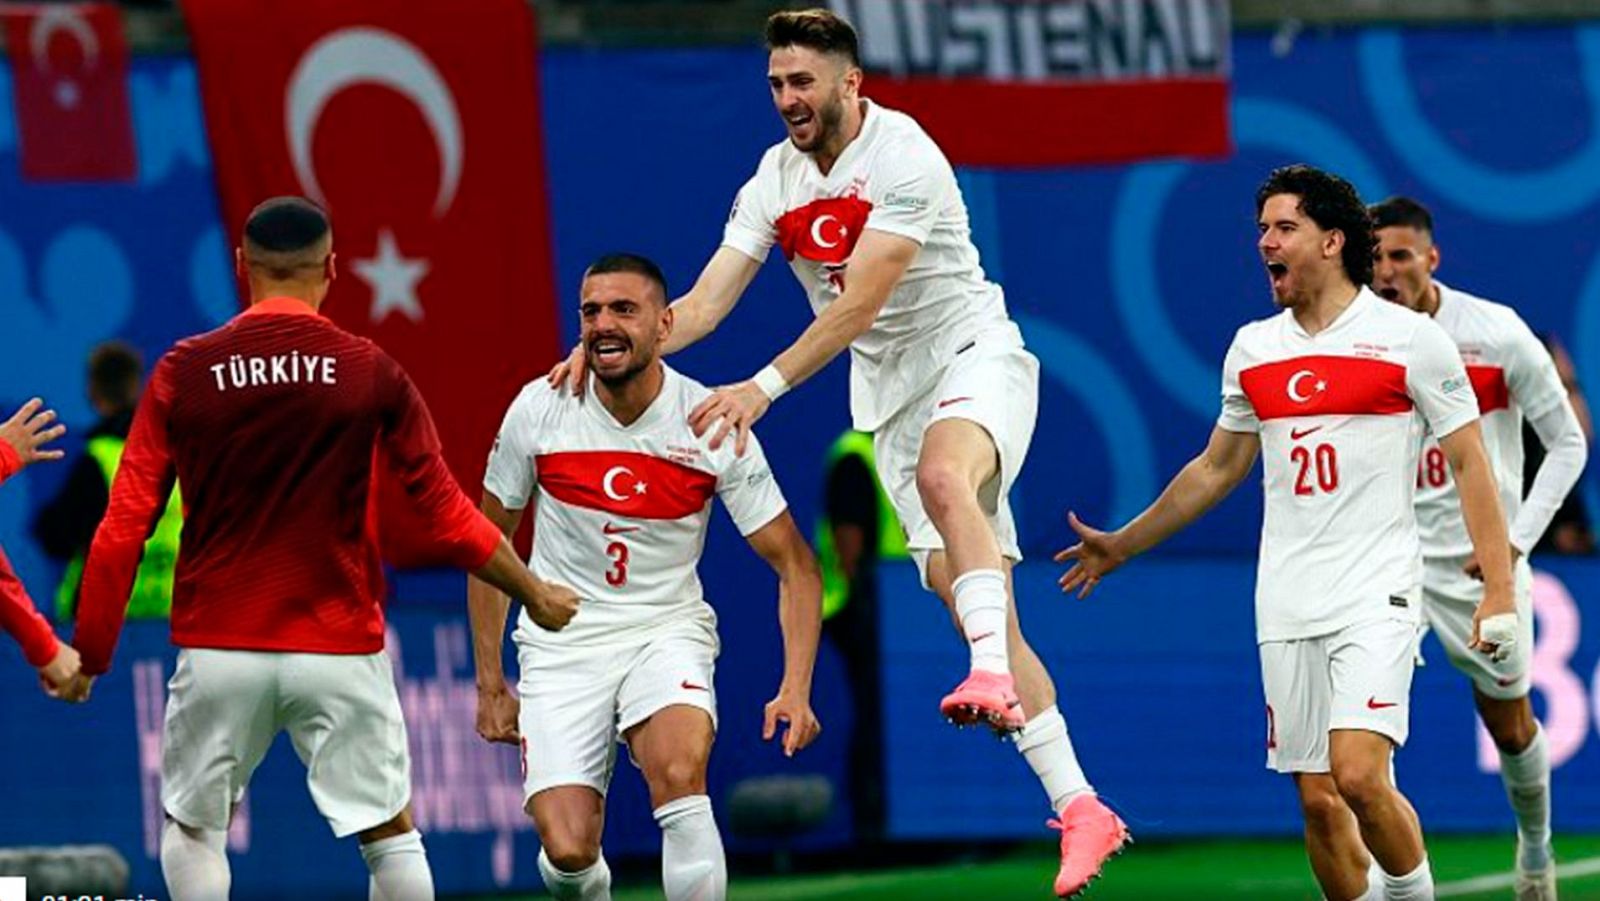 Austria-Turquía de la Eurocopa, lo más visto del martes